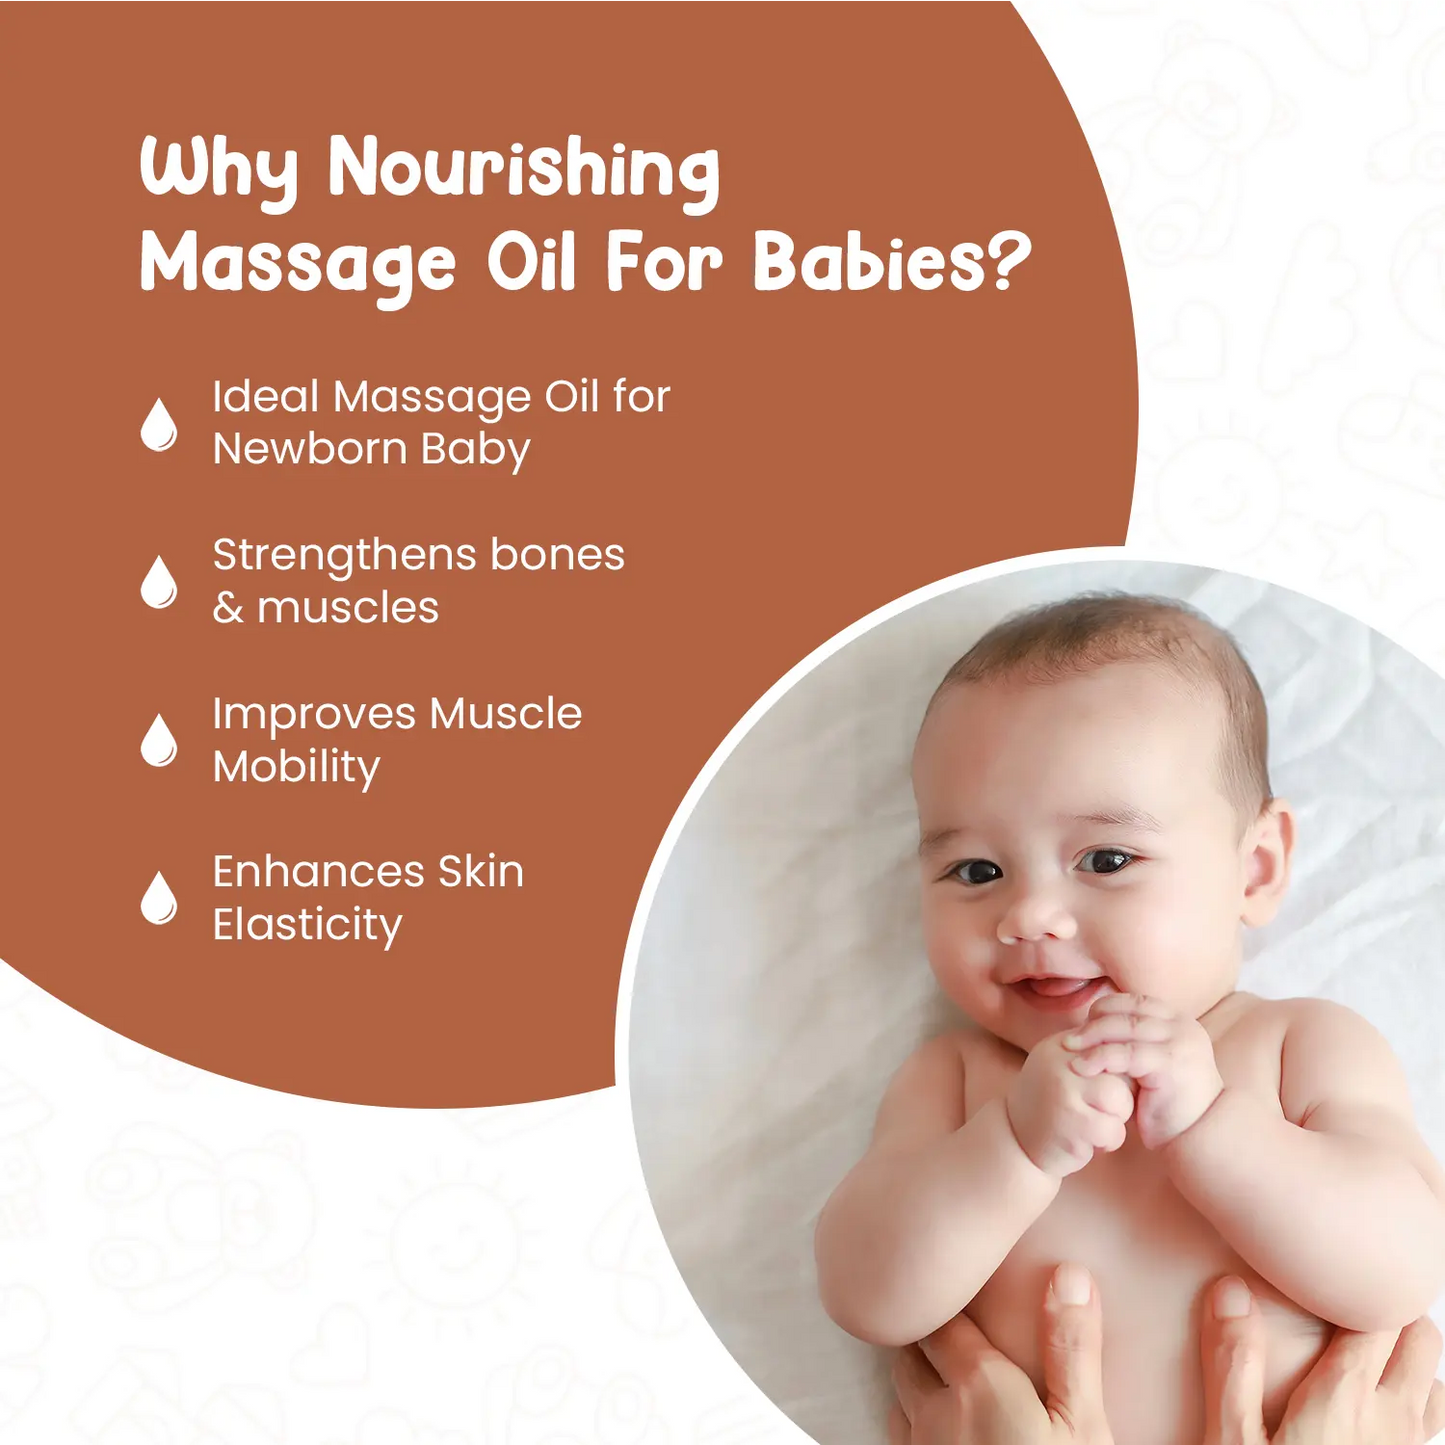 Nourishing Baby Massage Oil for Newborn